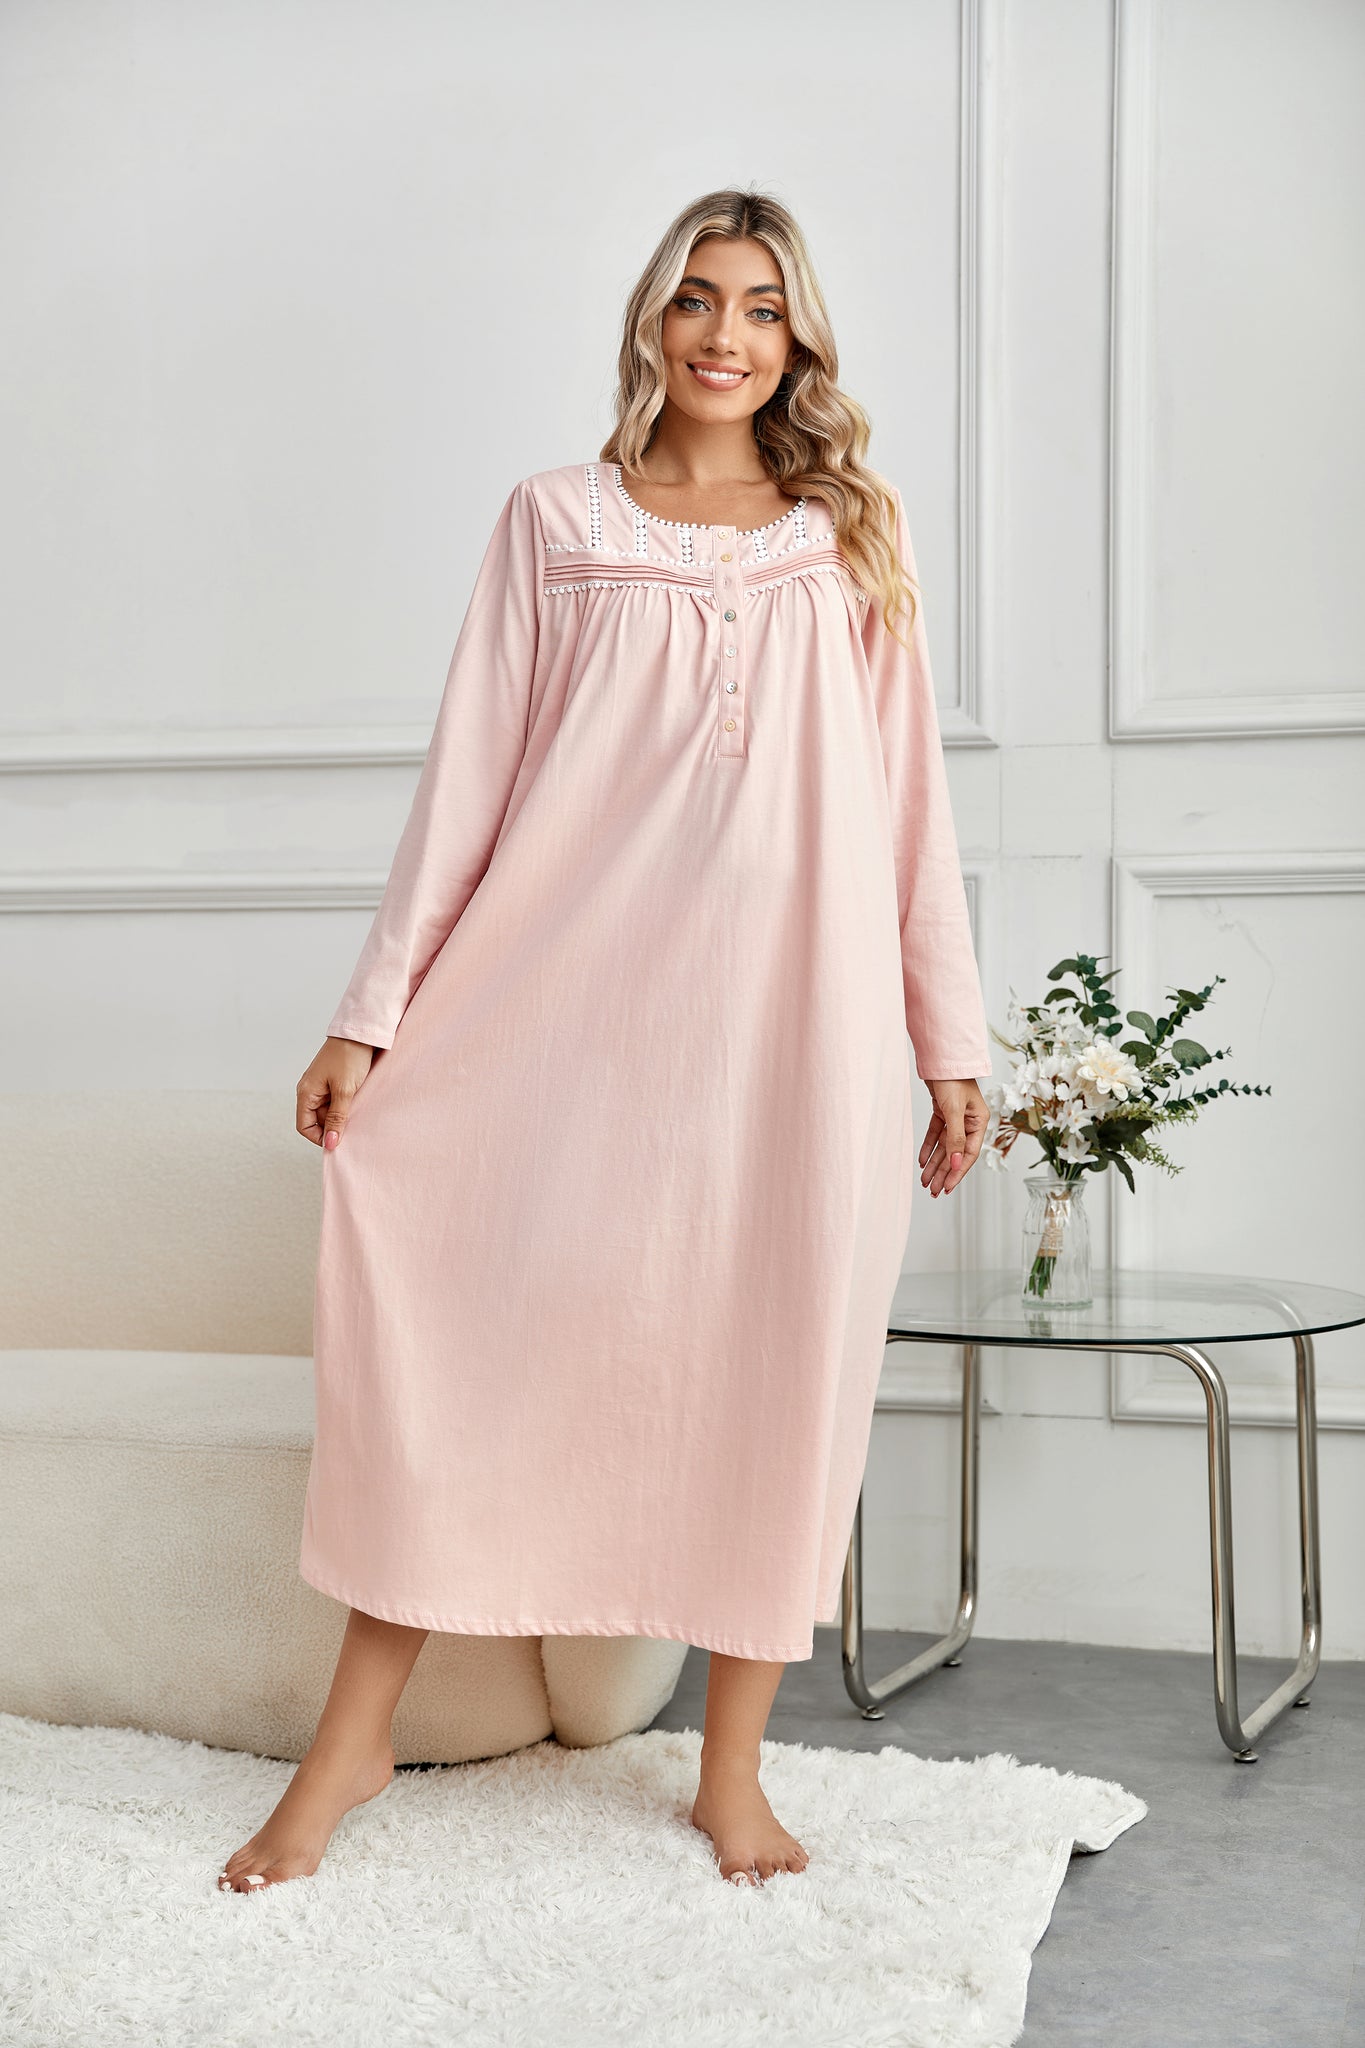 Richie House RH Nightgown Women's Long Sleeve Sleepwear Full